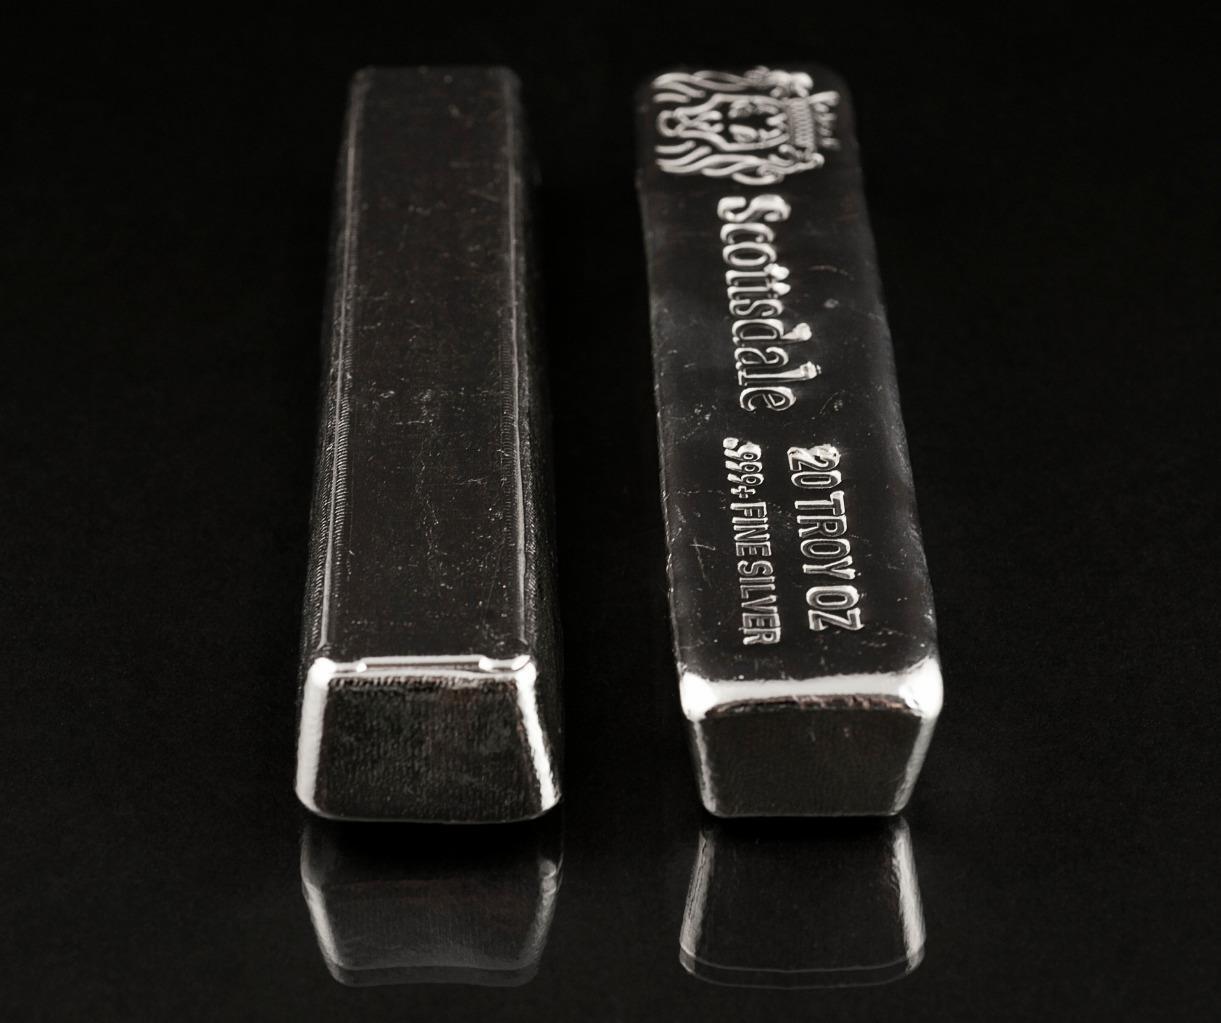 20 oz .999 Silver Bullion Long Cast Bar by Scottsdale Mint #A397 Без бренда - фотография #4